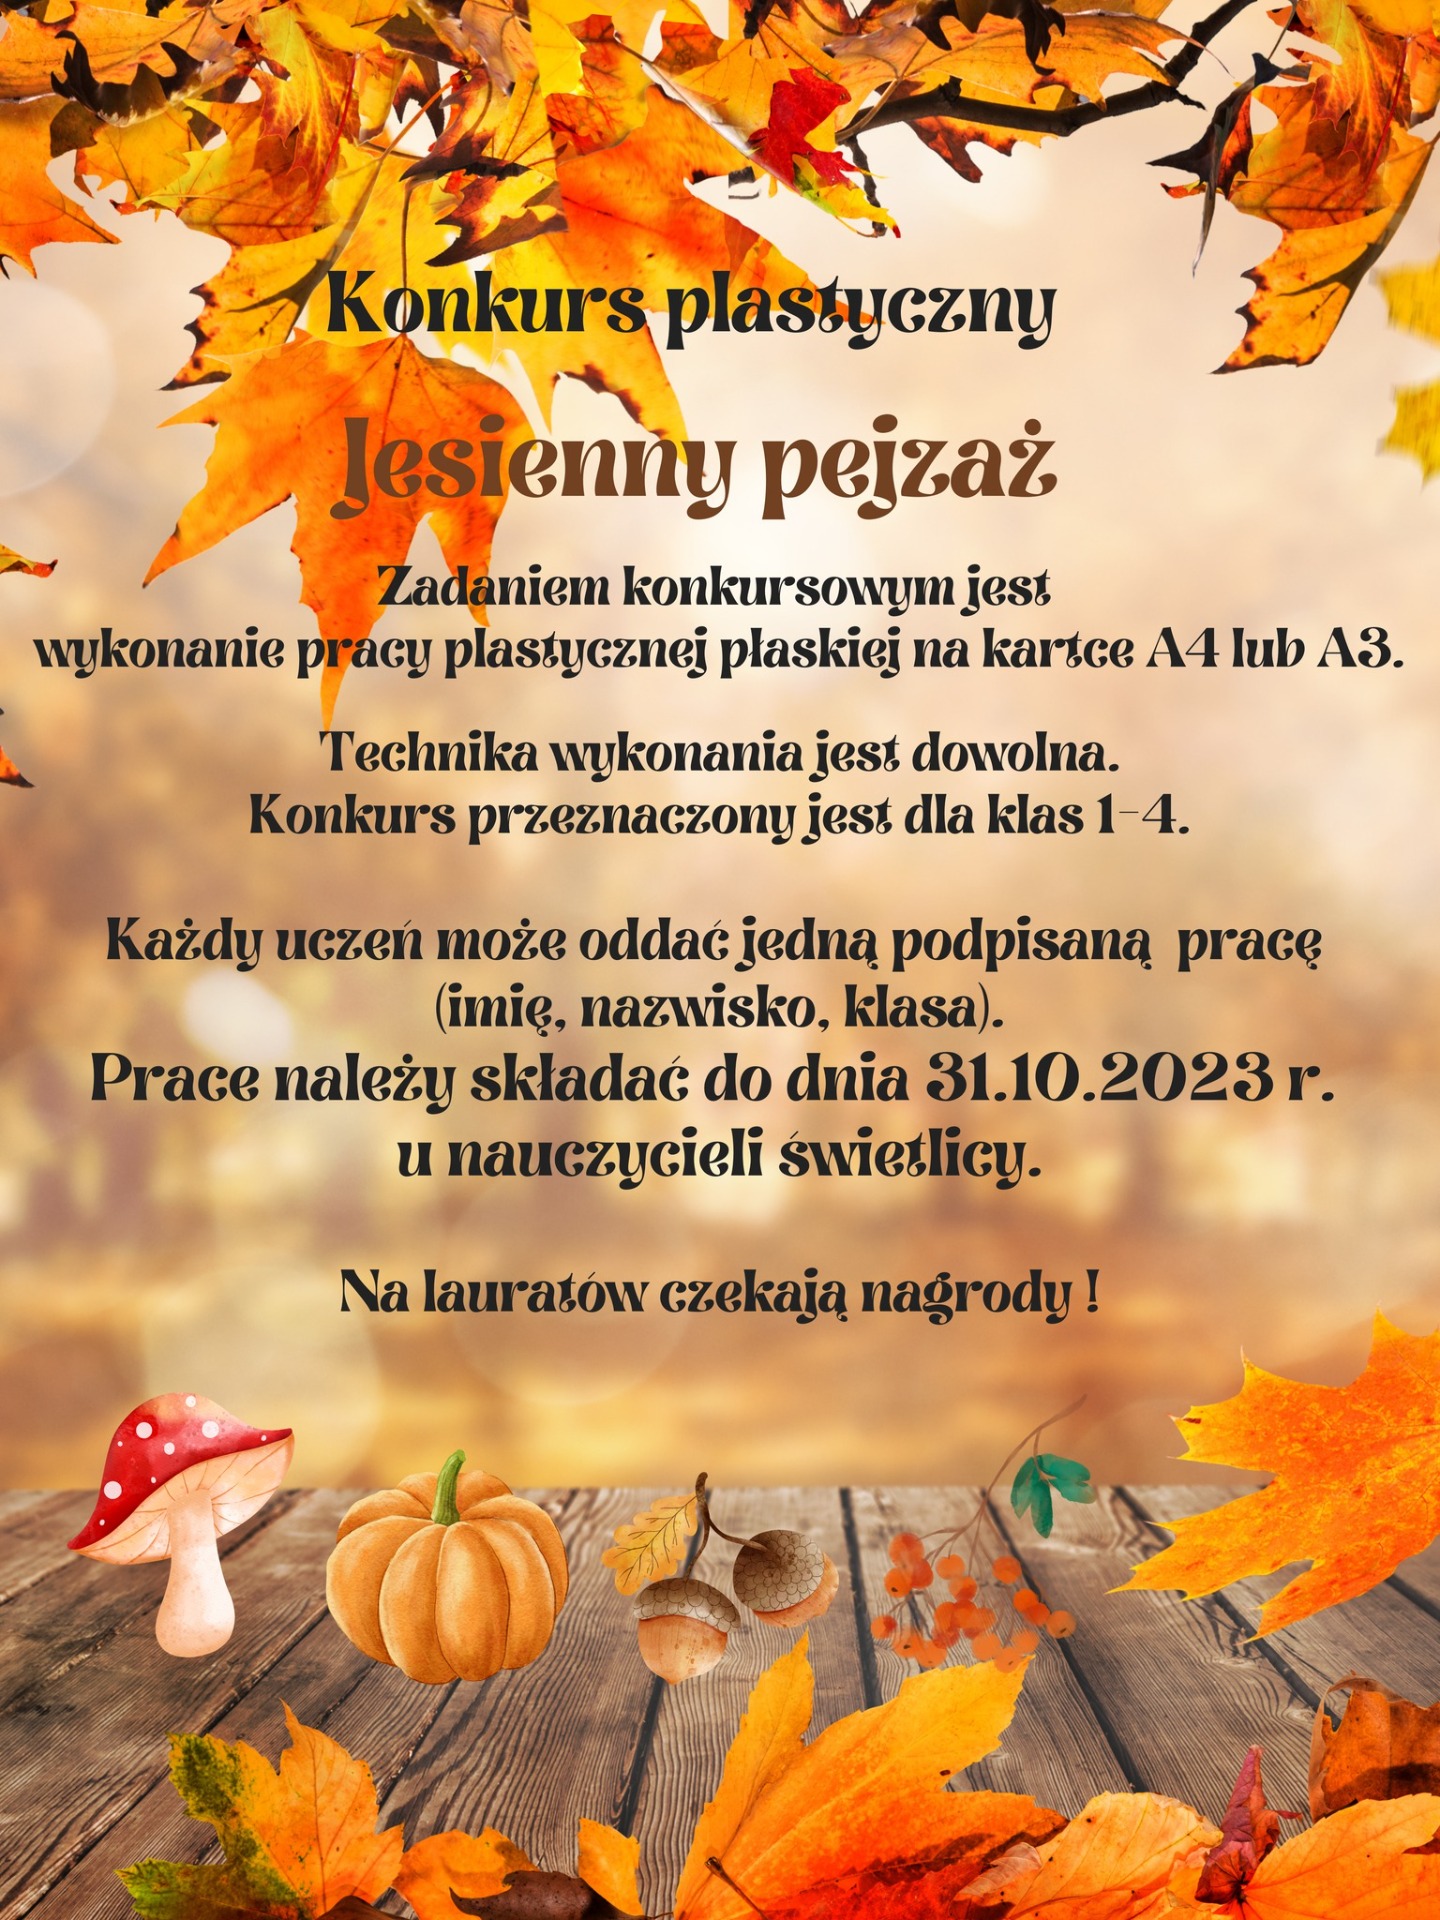 Konkurs plastyczny "Jesienny pejzaż" dla uczniów kl. I-IV - Obrazek 1